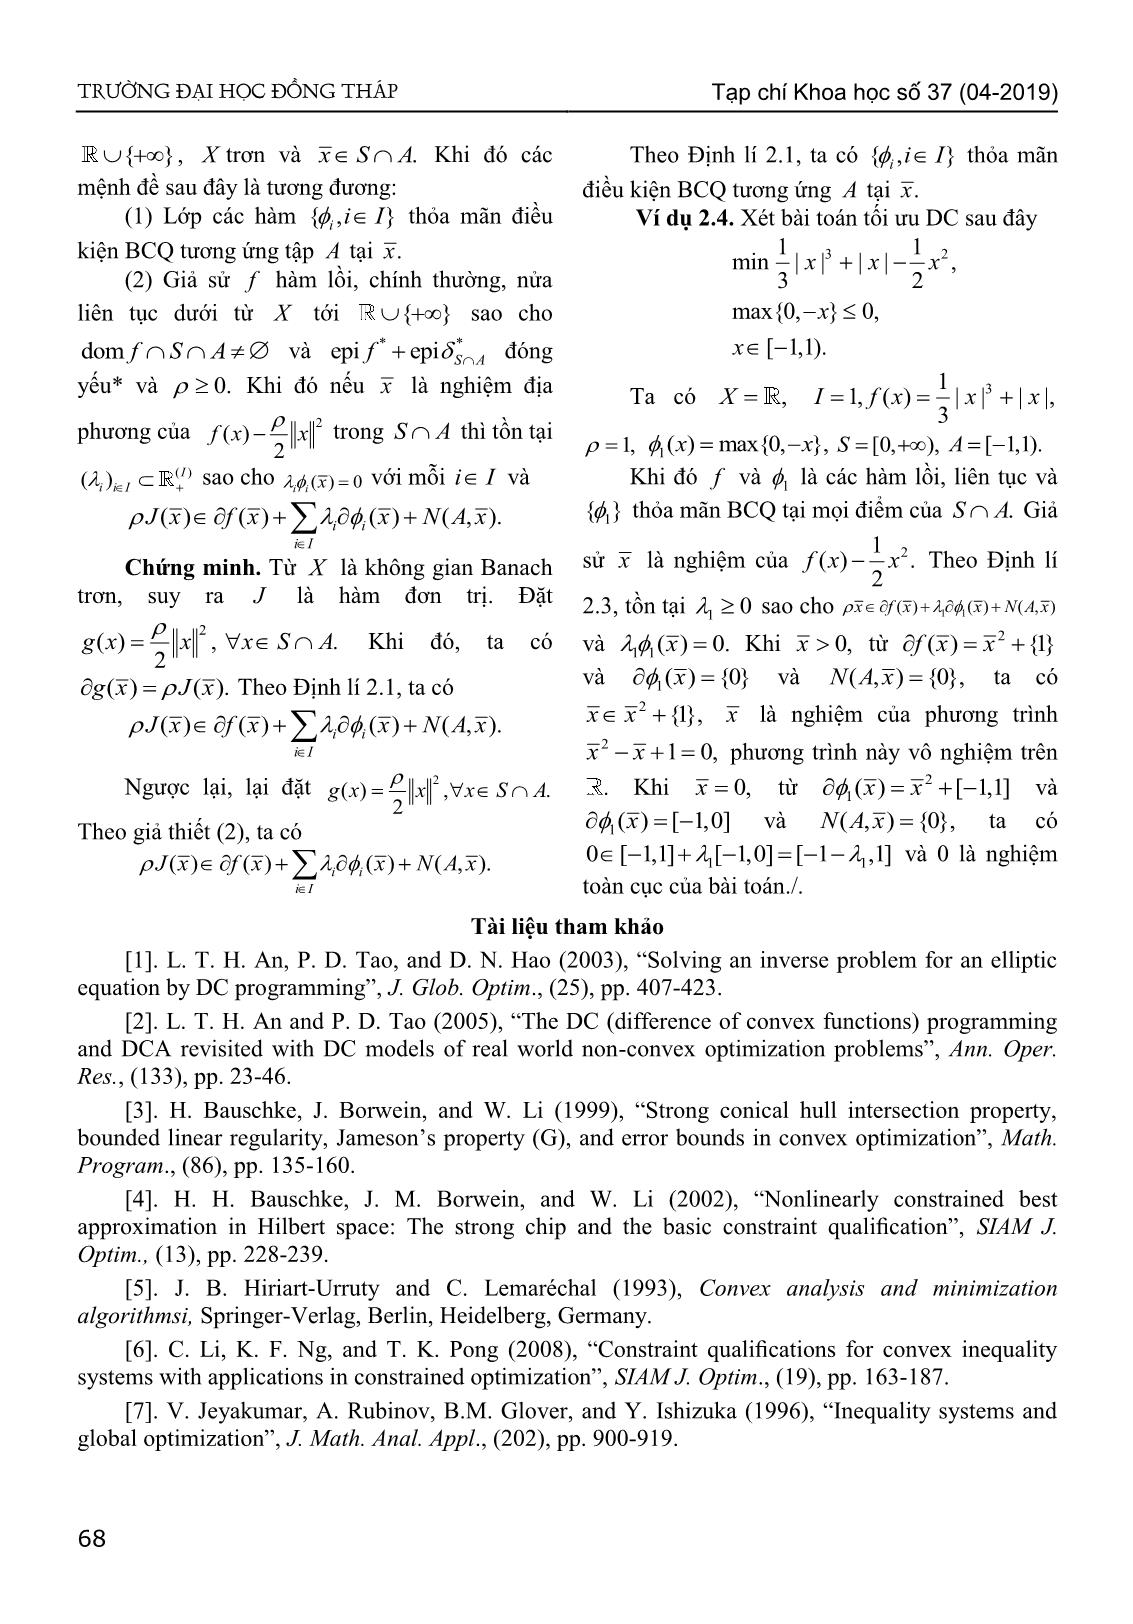 Điều kiện chính quy cho bài toán tối ưu DC với ràng buộc hệ bất phương trình lồi và tập lồi trang 5